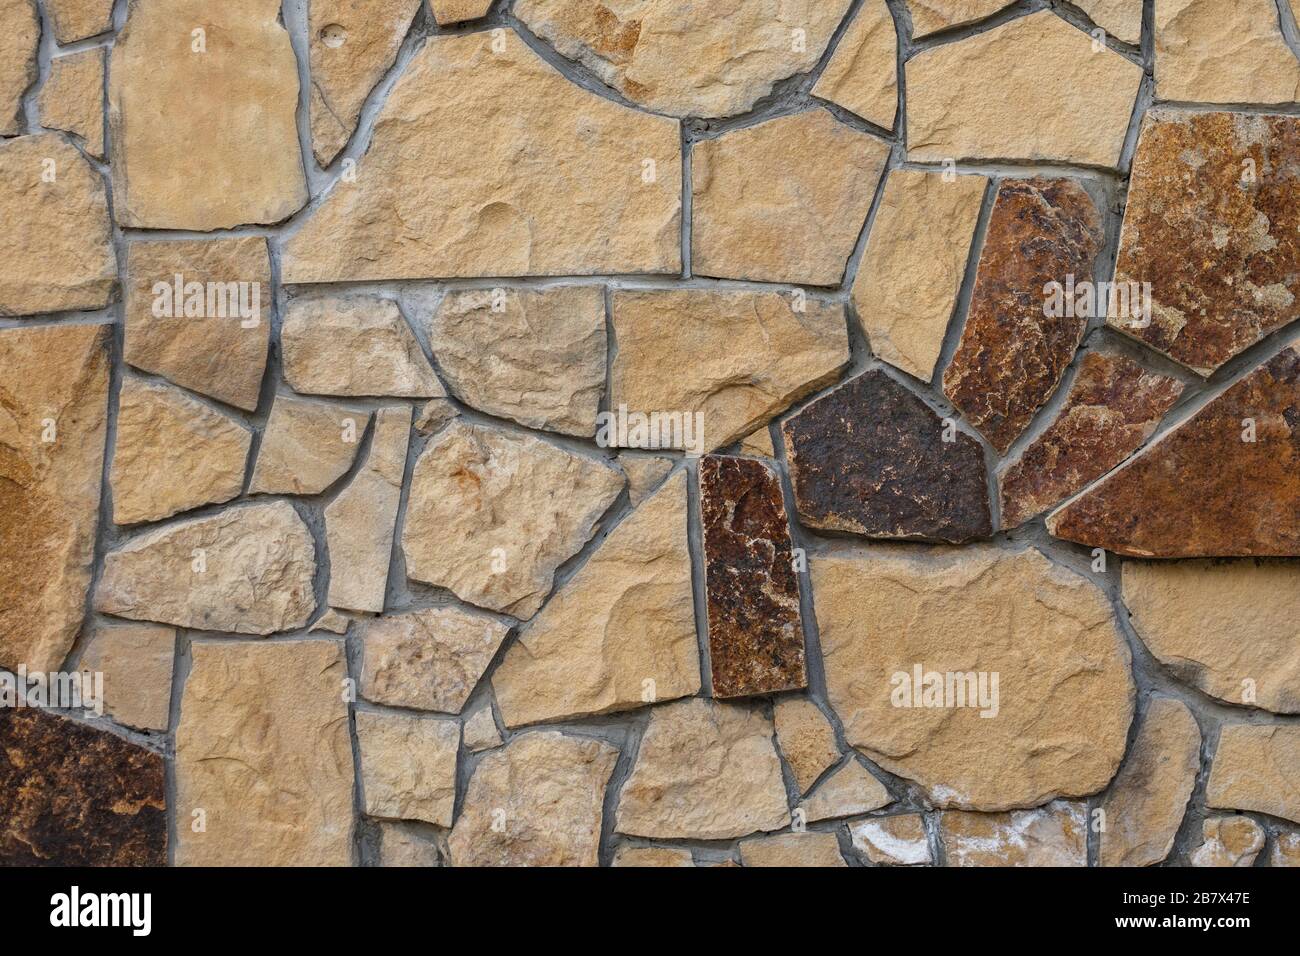 Decorative wall. Rocks texture. Wall of many stones with heterogeneous shapes Stock Photo